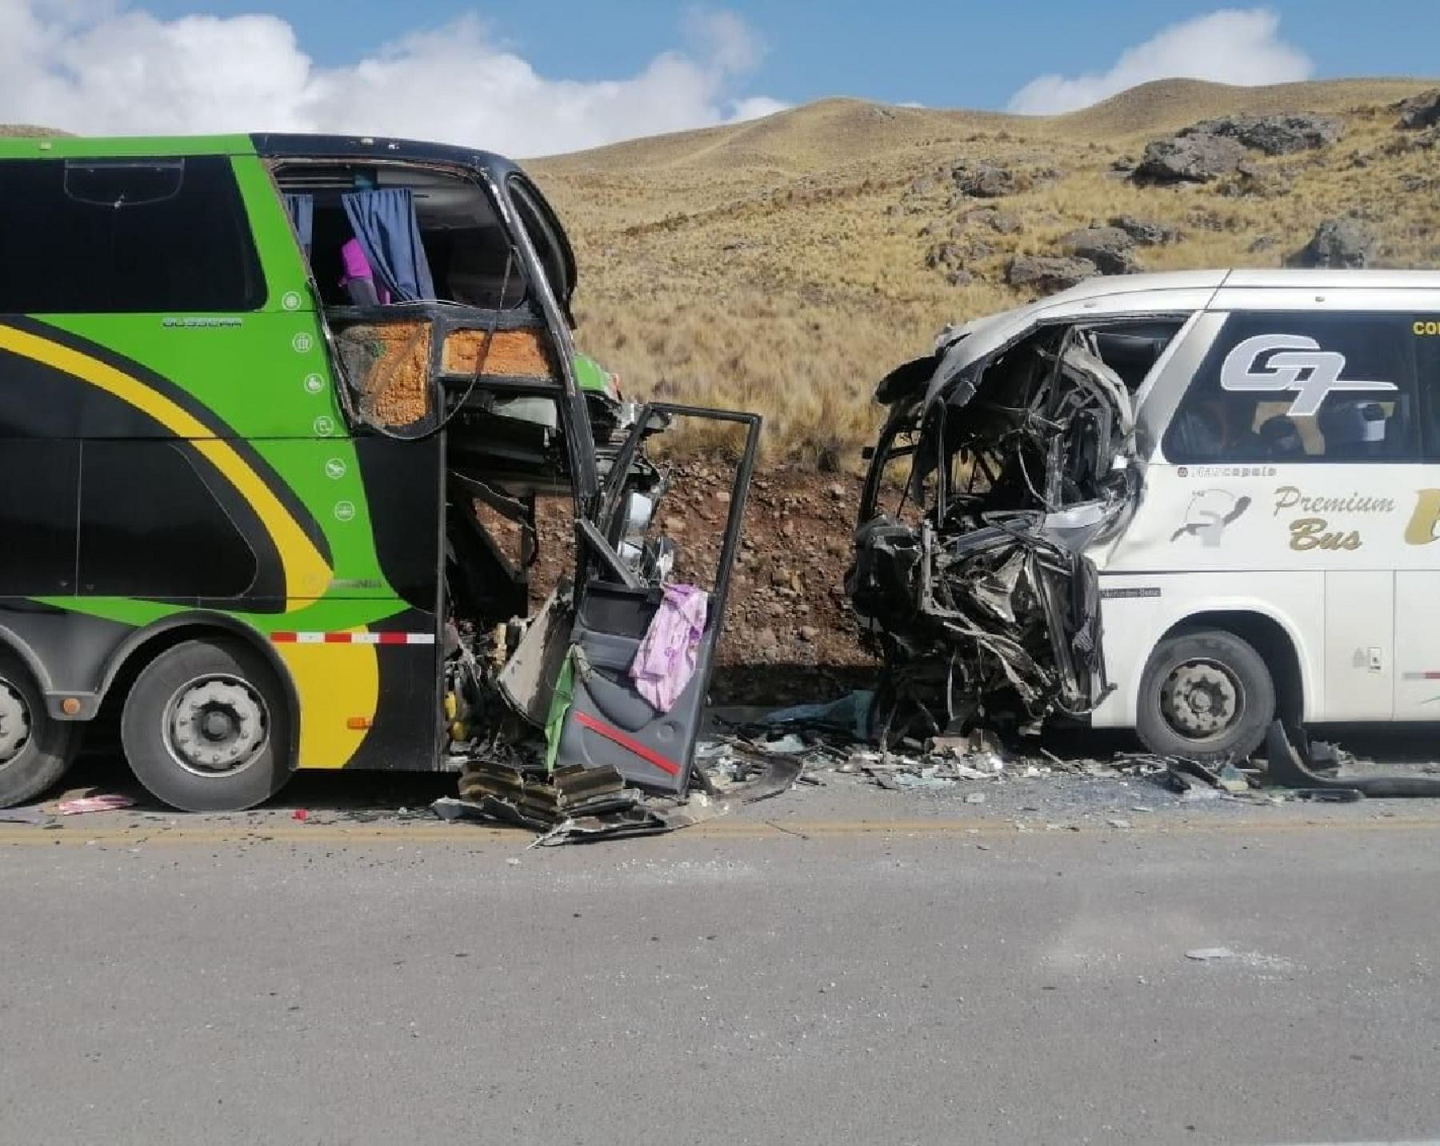 Accidentes de carretera en Perú: ¿dónde ocurren más y por qué razones?